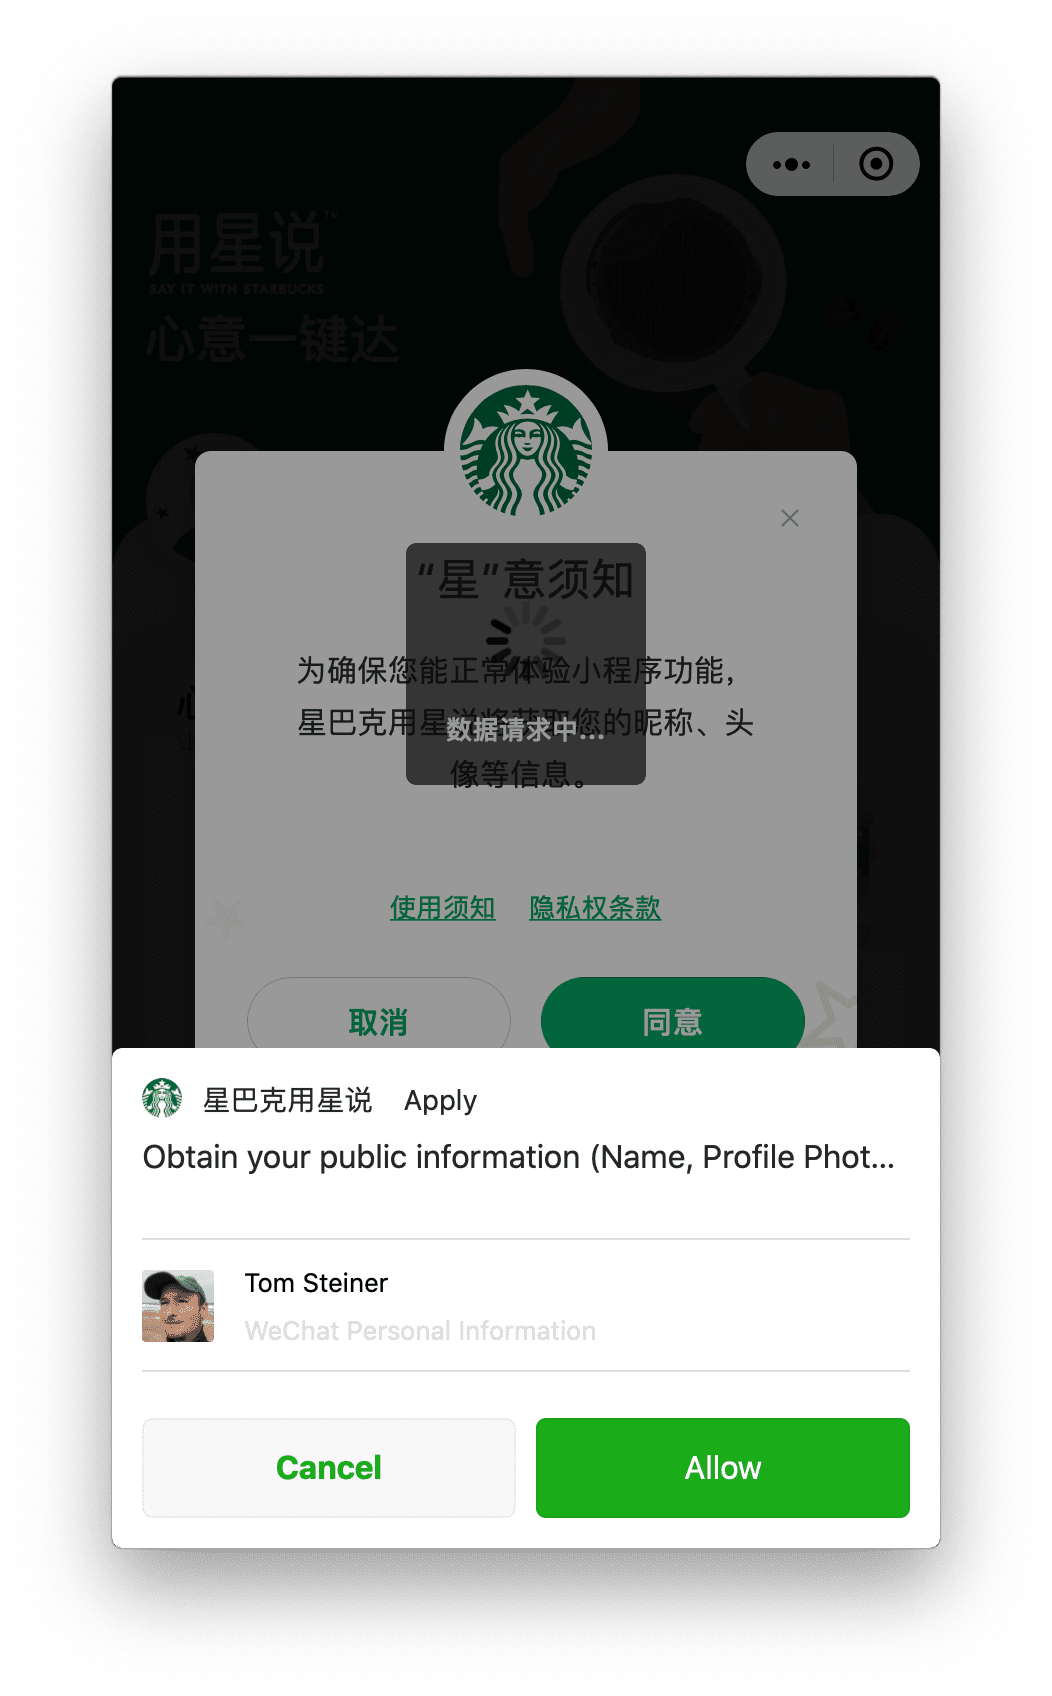 macOS&#39;te çalışan Starbucks mini uygulaması, kullanıcının alt tarafta görünen bir istem aracılığıyla verebileceği kullanıcı profili iznini istiyor.